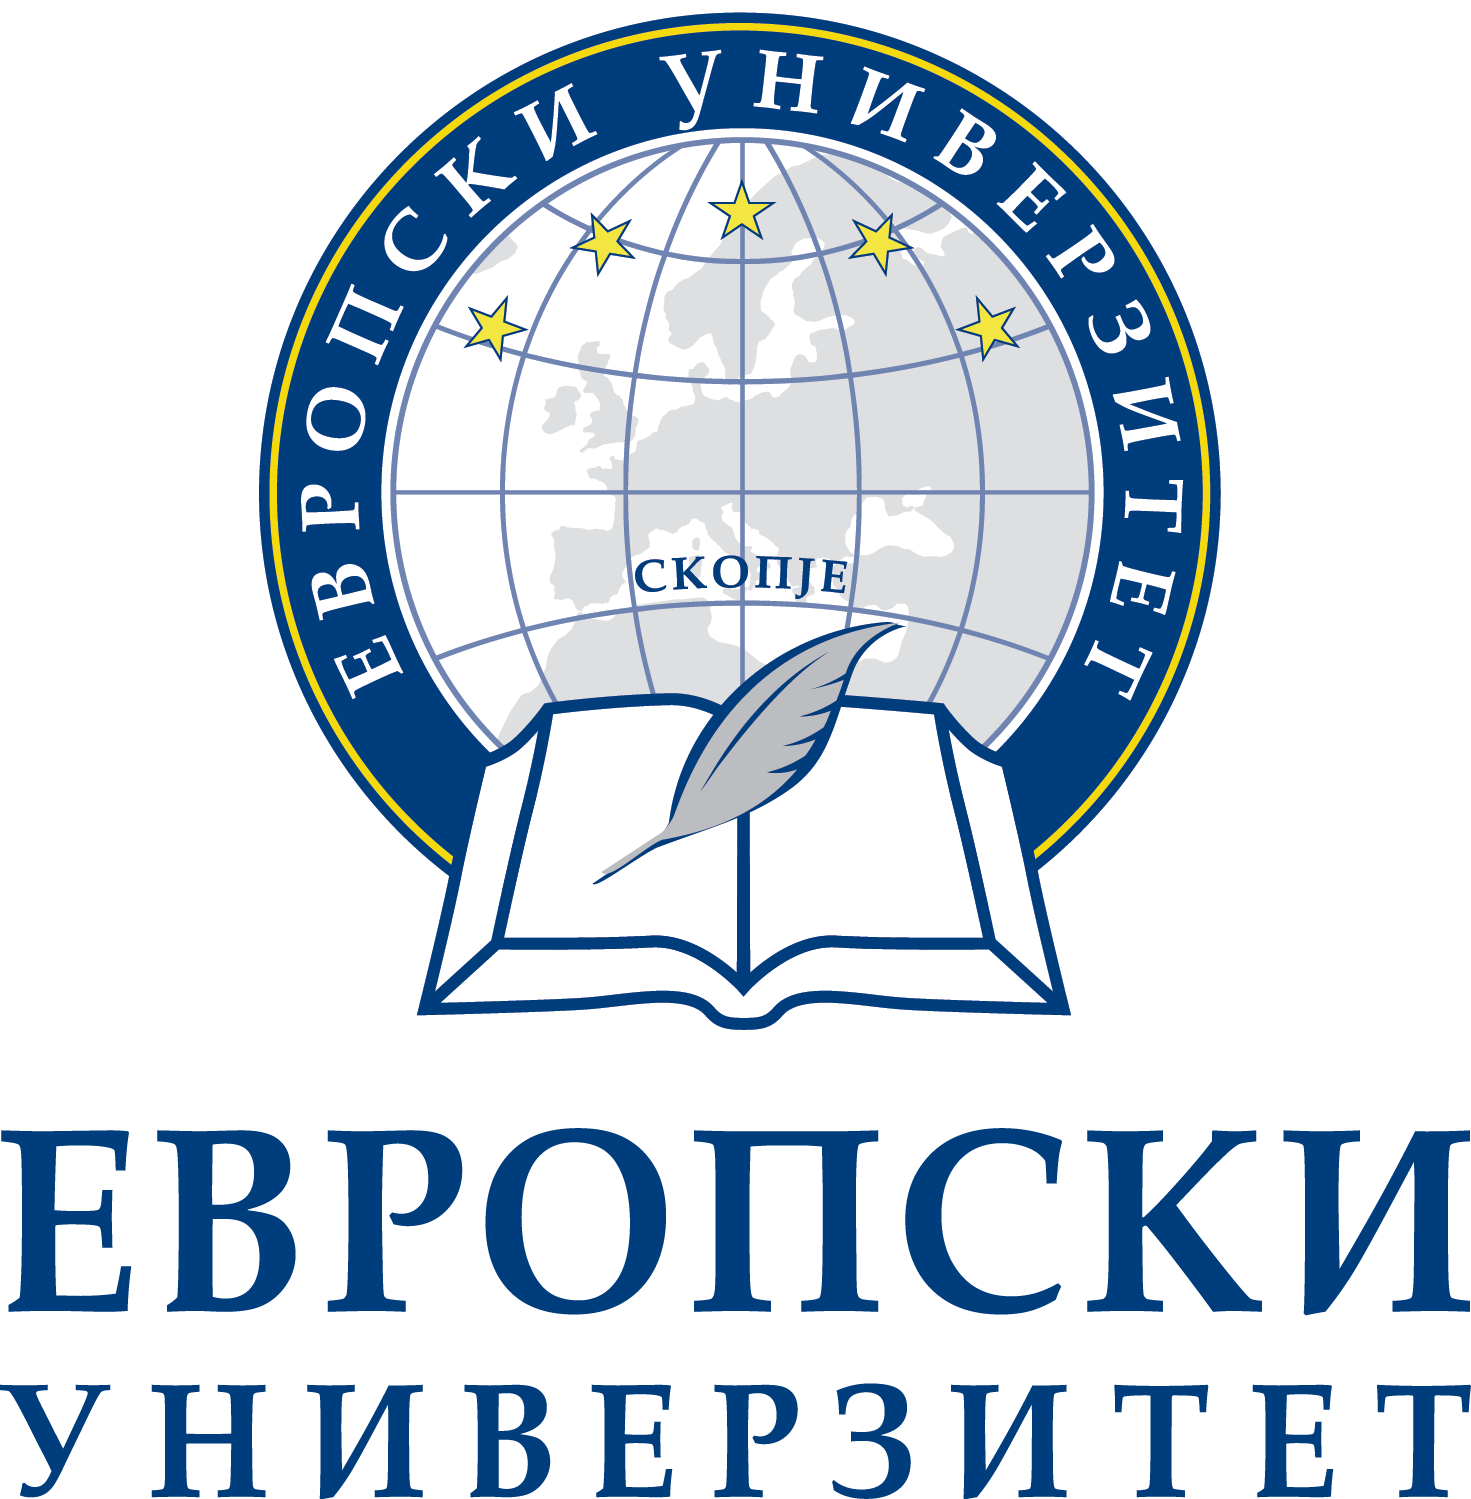 European university. Логотипы европейских университетов. Университет Скопье. Университет Скопье логотип.